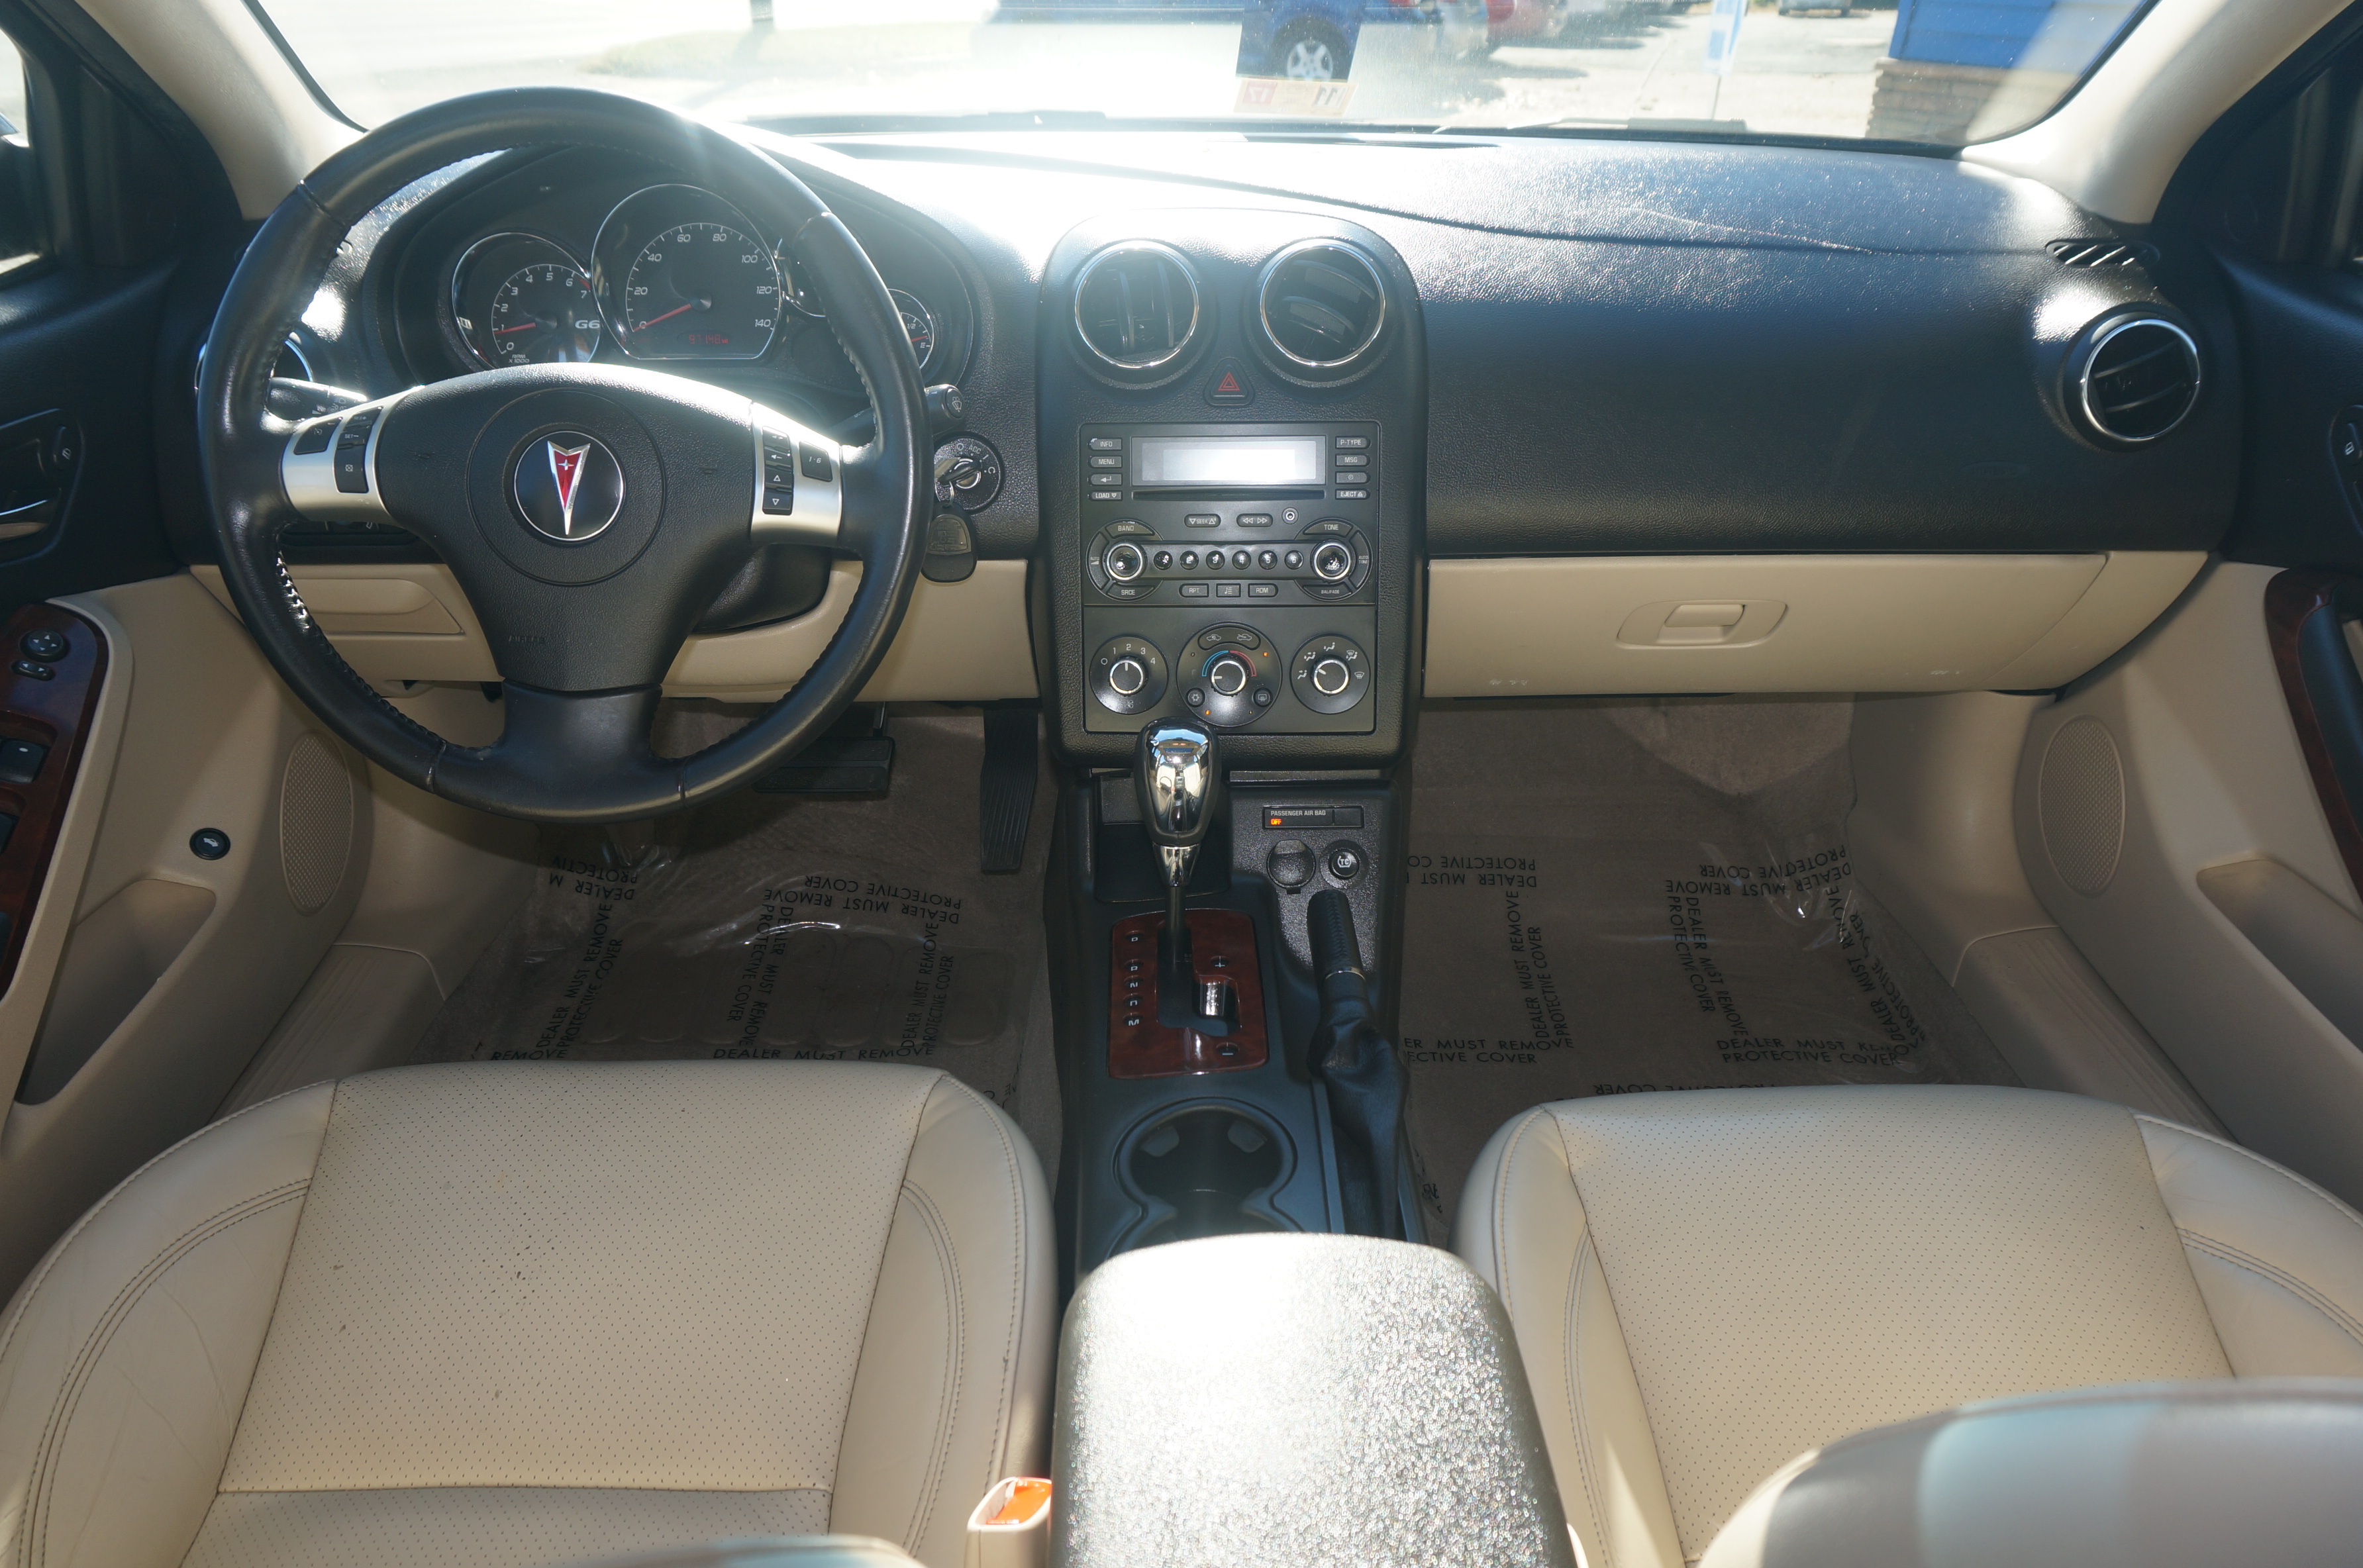 2008 Pontiac G6 Gt